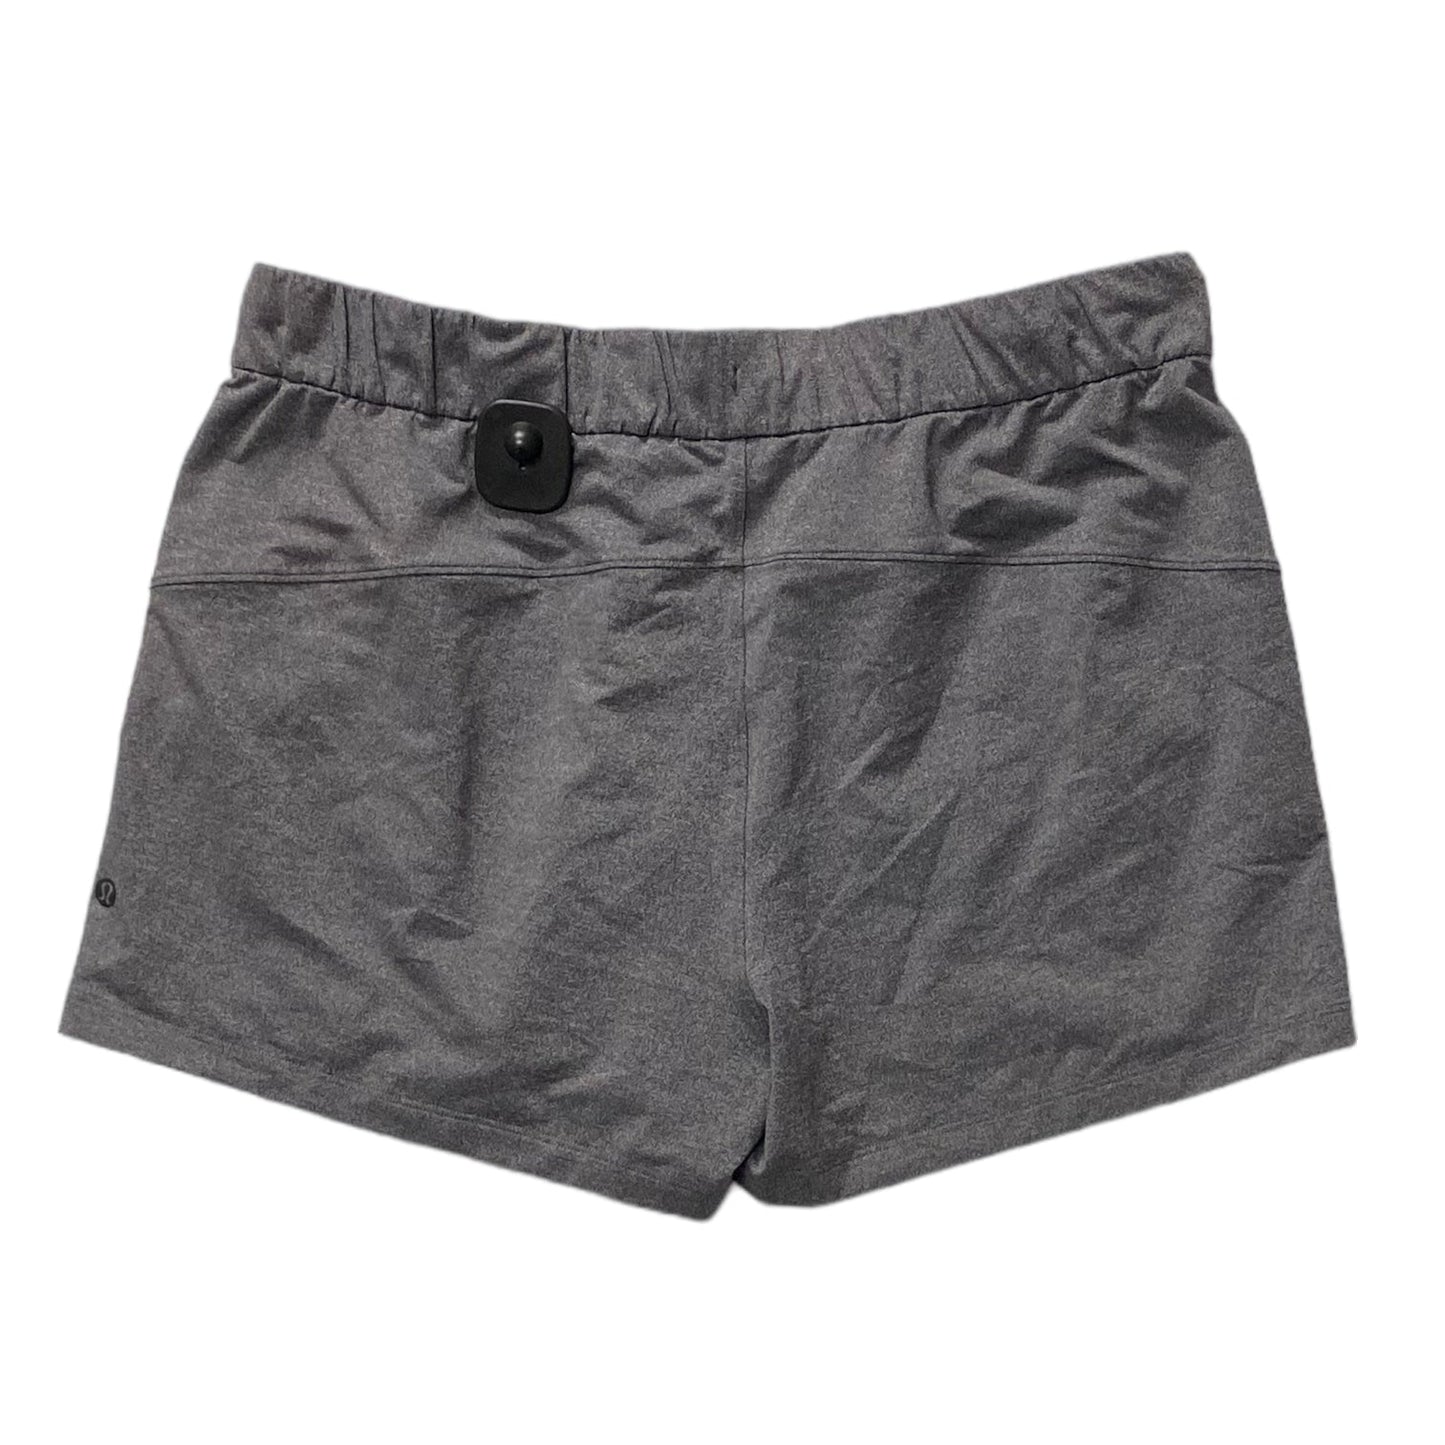 Grey Athletic Shorts Lululemon, Size 12